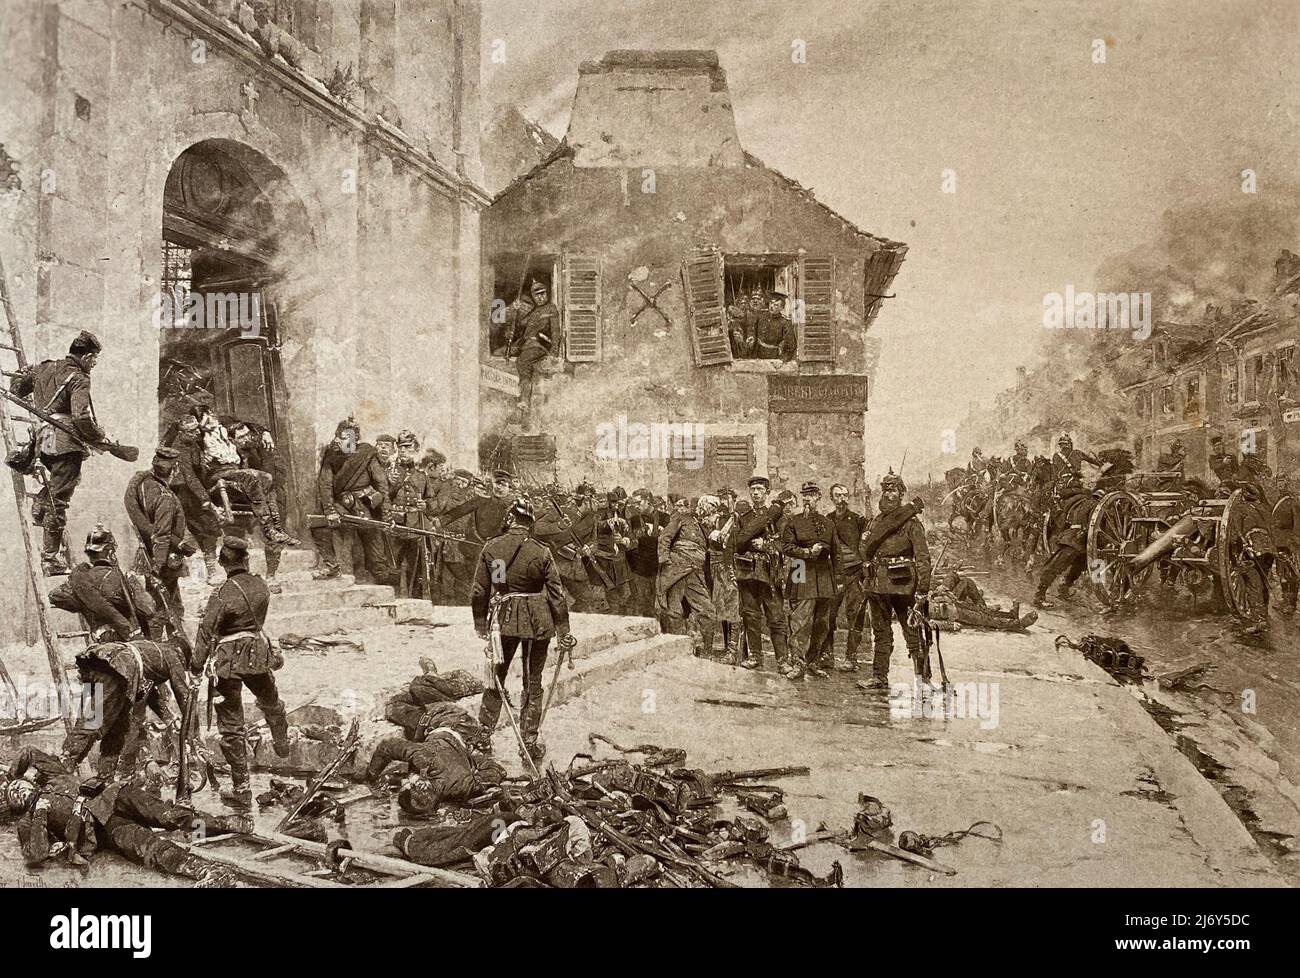 Ein antiker Stich 'Verteidigung von Le Bourget' 1870, nach einem Gemälde von Alphonse Marie De Neuville, aus George Barrie's International Gallery of Prints, veröffentlicht 1886. Stockfoto